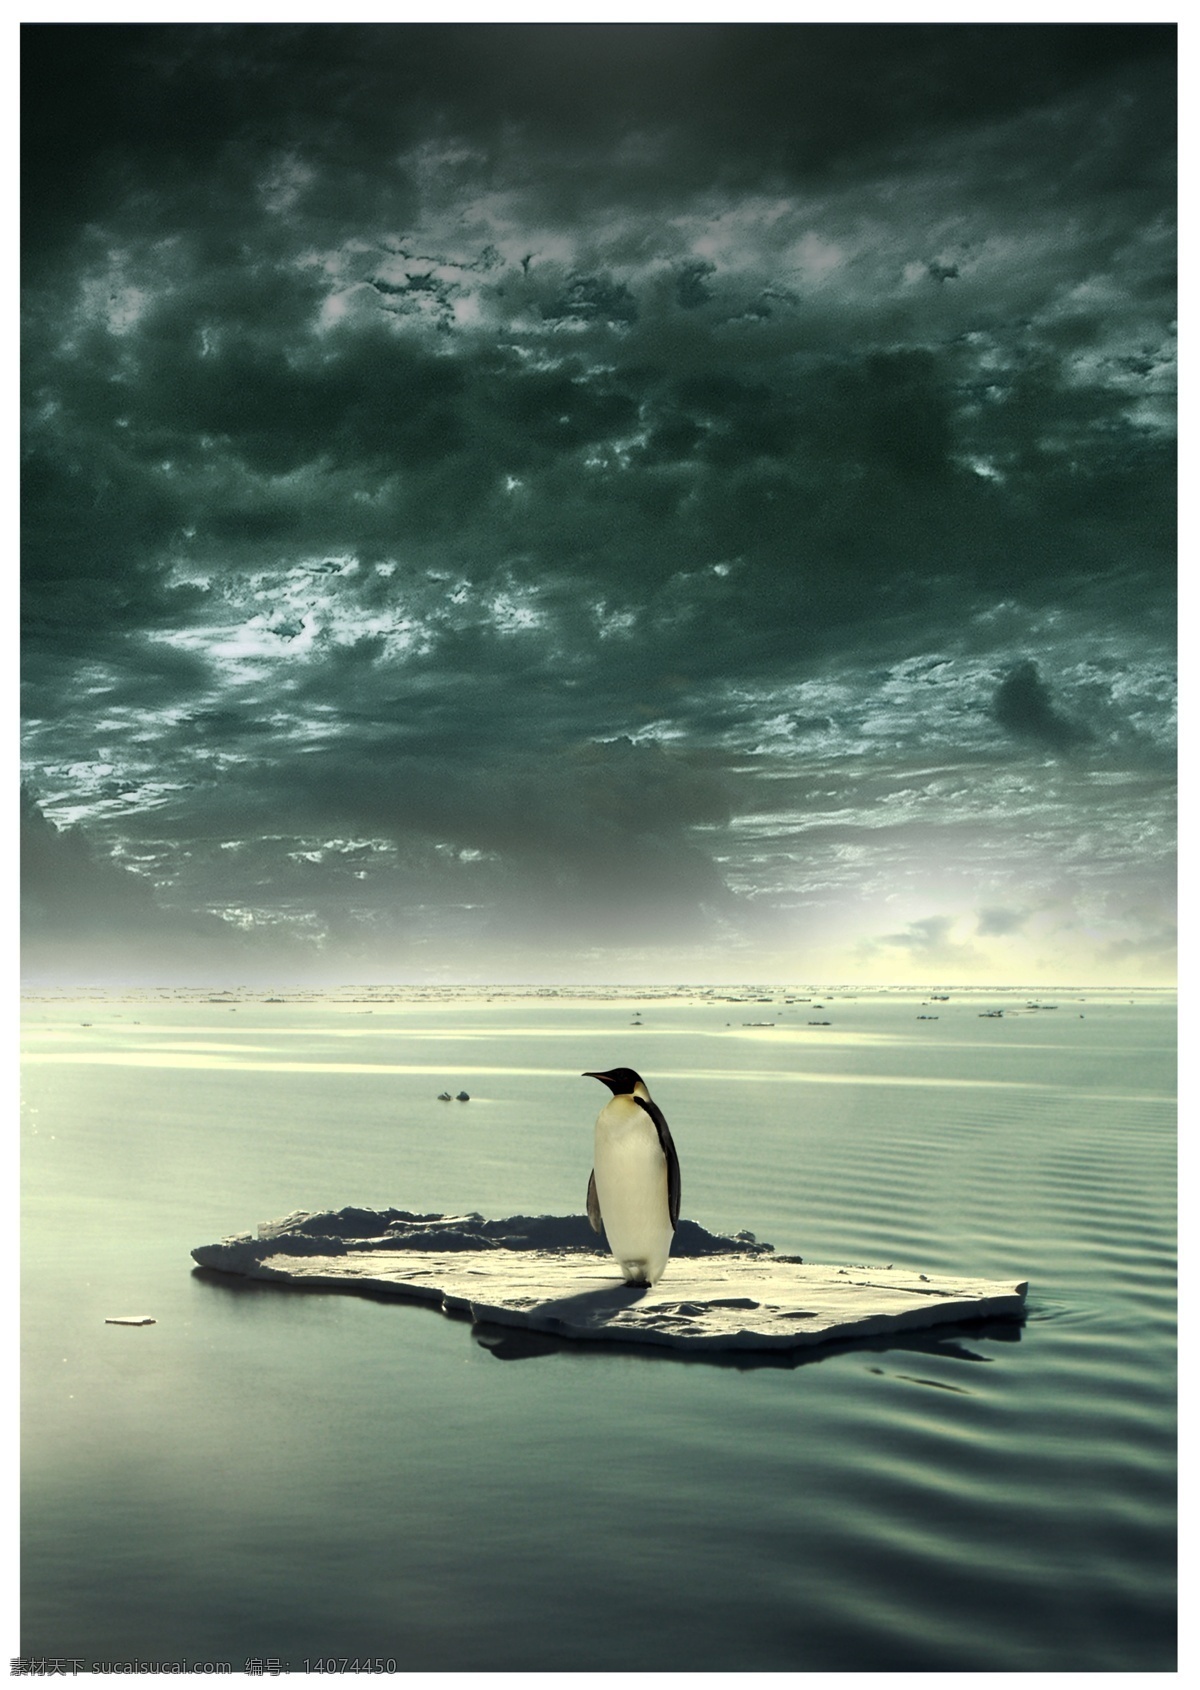 保护 南极 企鹅 创意 创意海报设计 酷炫背景 活动宣传海报 底图 底纹